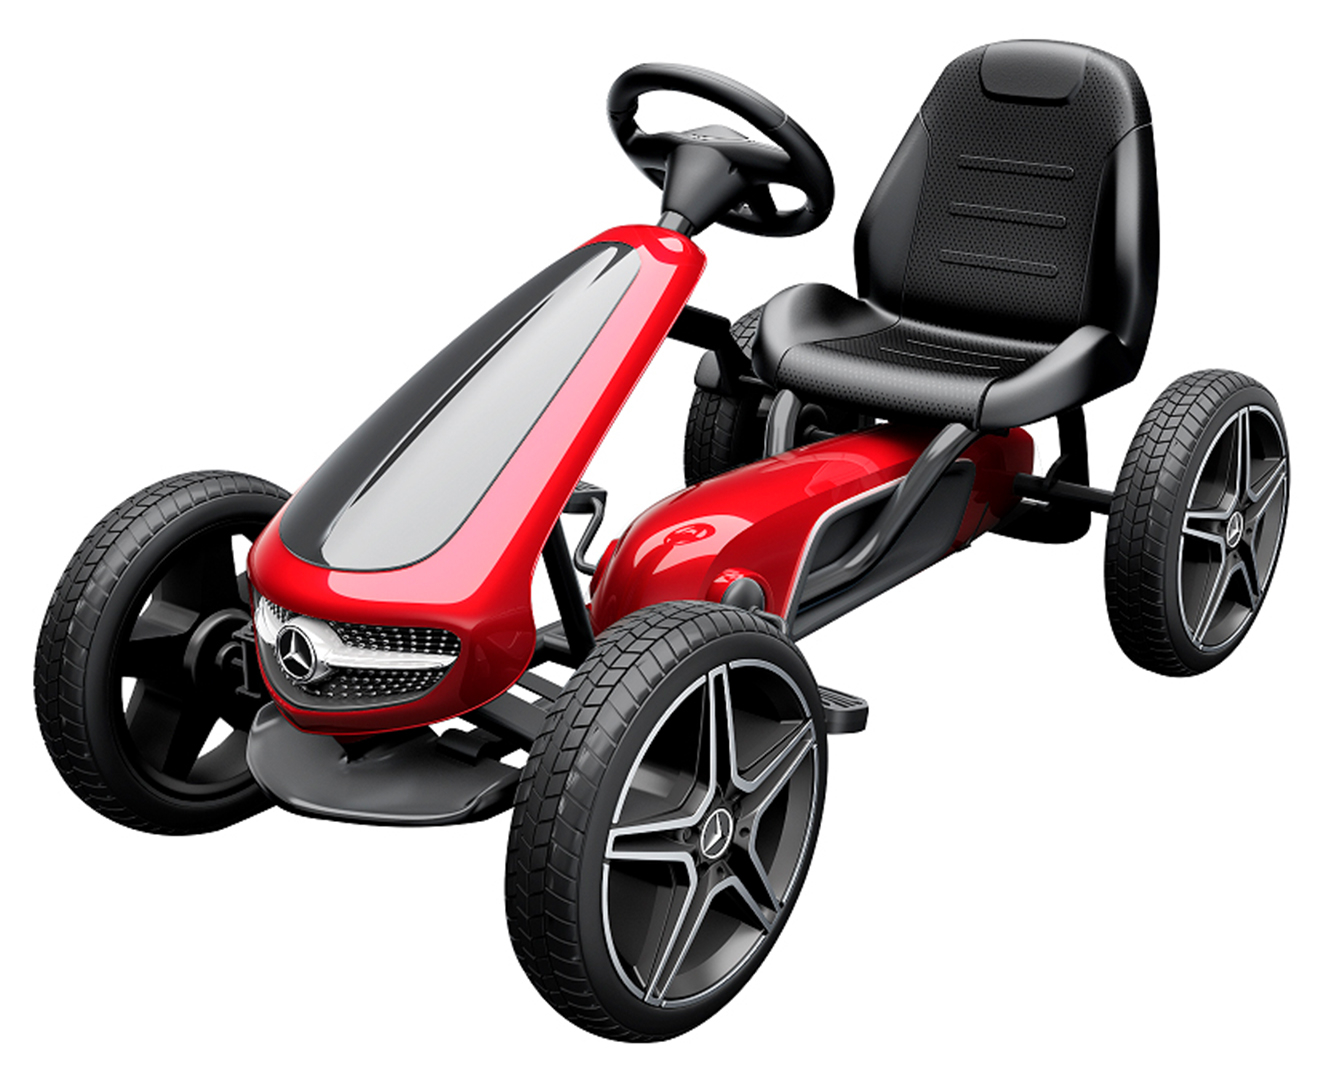 Mercedes Benz Pedal Go Kart - Red/Black | Catch.com.au